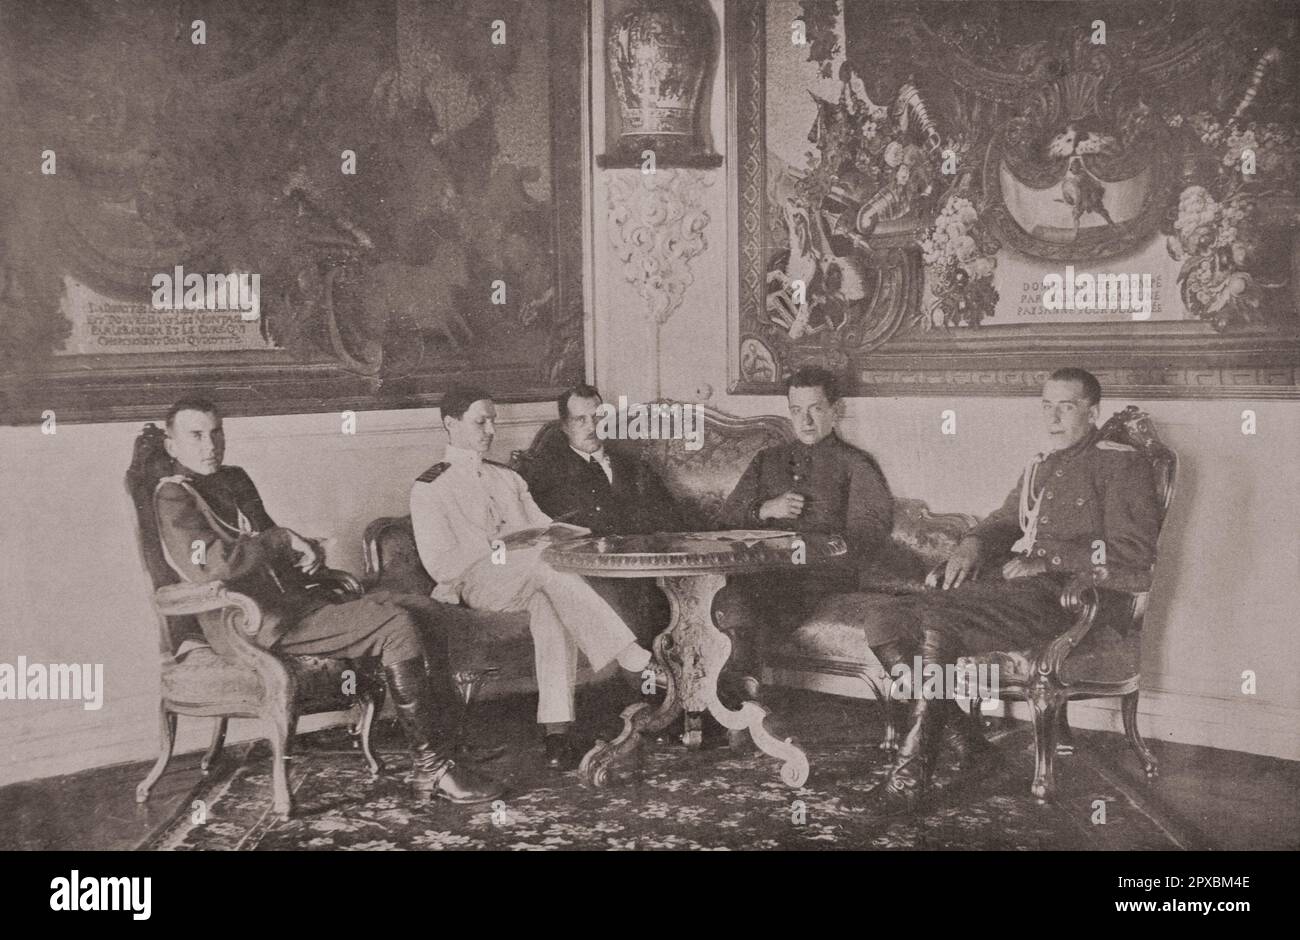 Erster Weltkrieg Russische Revolution. 1917 Uhr vor dem Herbst: Eine der letzten Fotositzungen von Kerensky an einen Fotografen in einem Wohnzimmer des Kremls in Moskau unter den französischen Wandteppichen der Don Quijote-Serie. Stockfoto